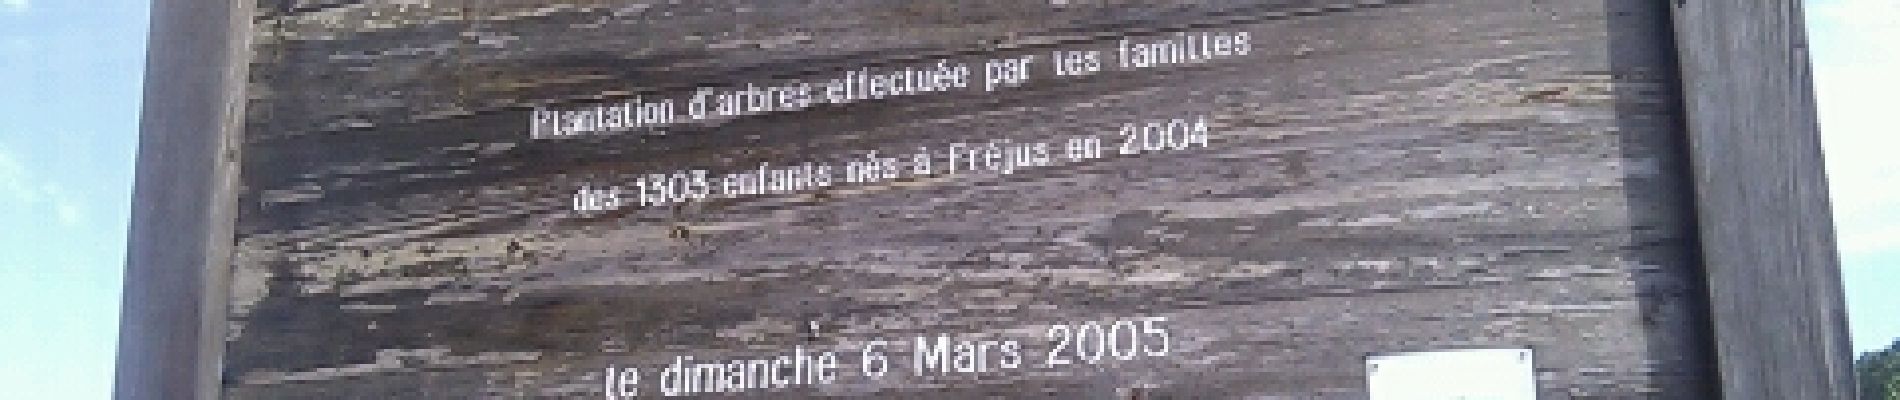 POI Fréjus - Forêt des enfants - Photo